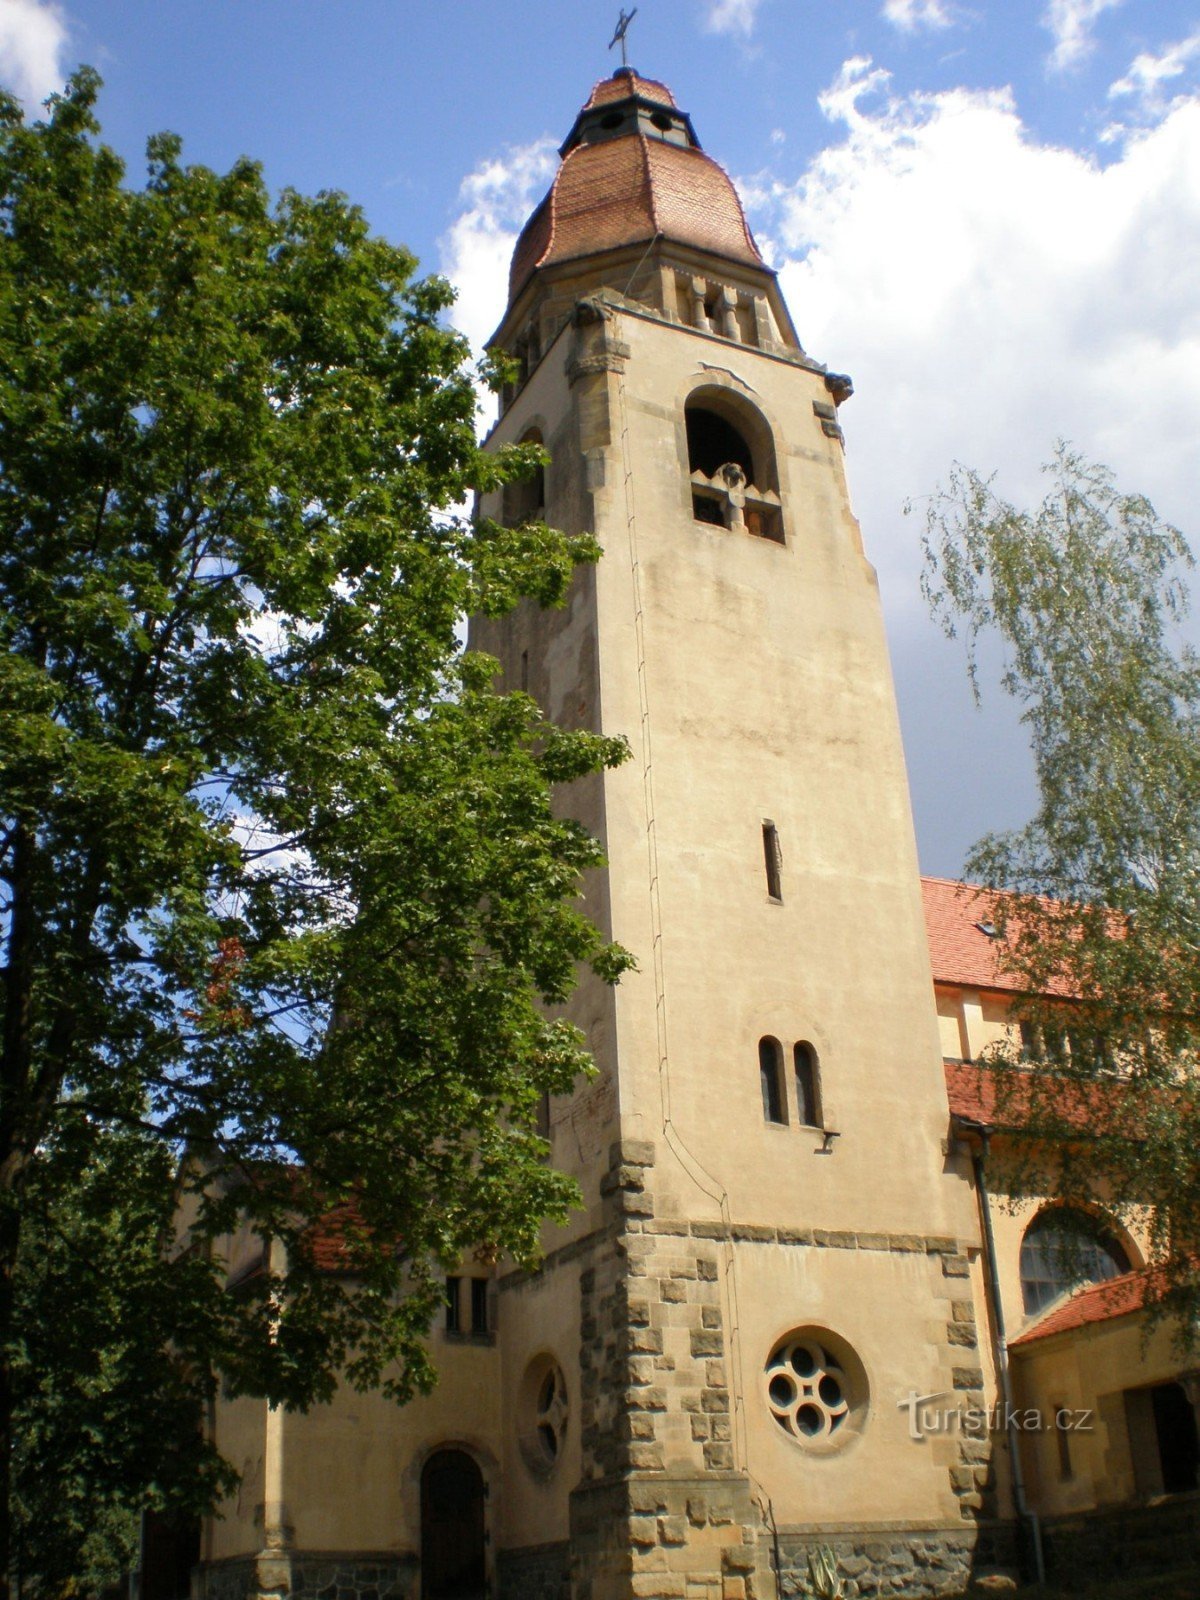 Štěchovice - biserica Sf. Jan Nepomucký